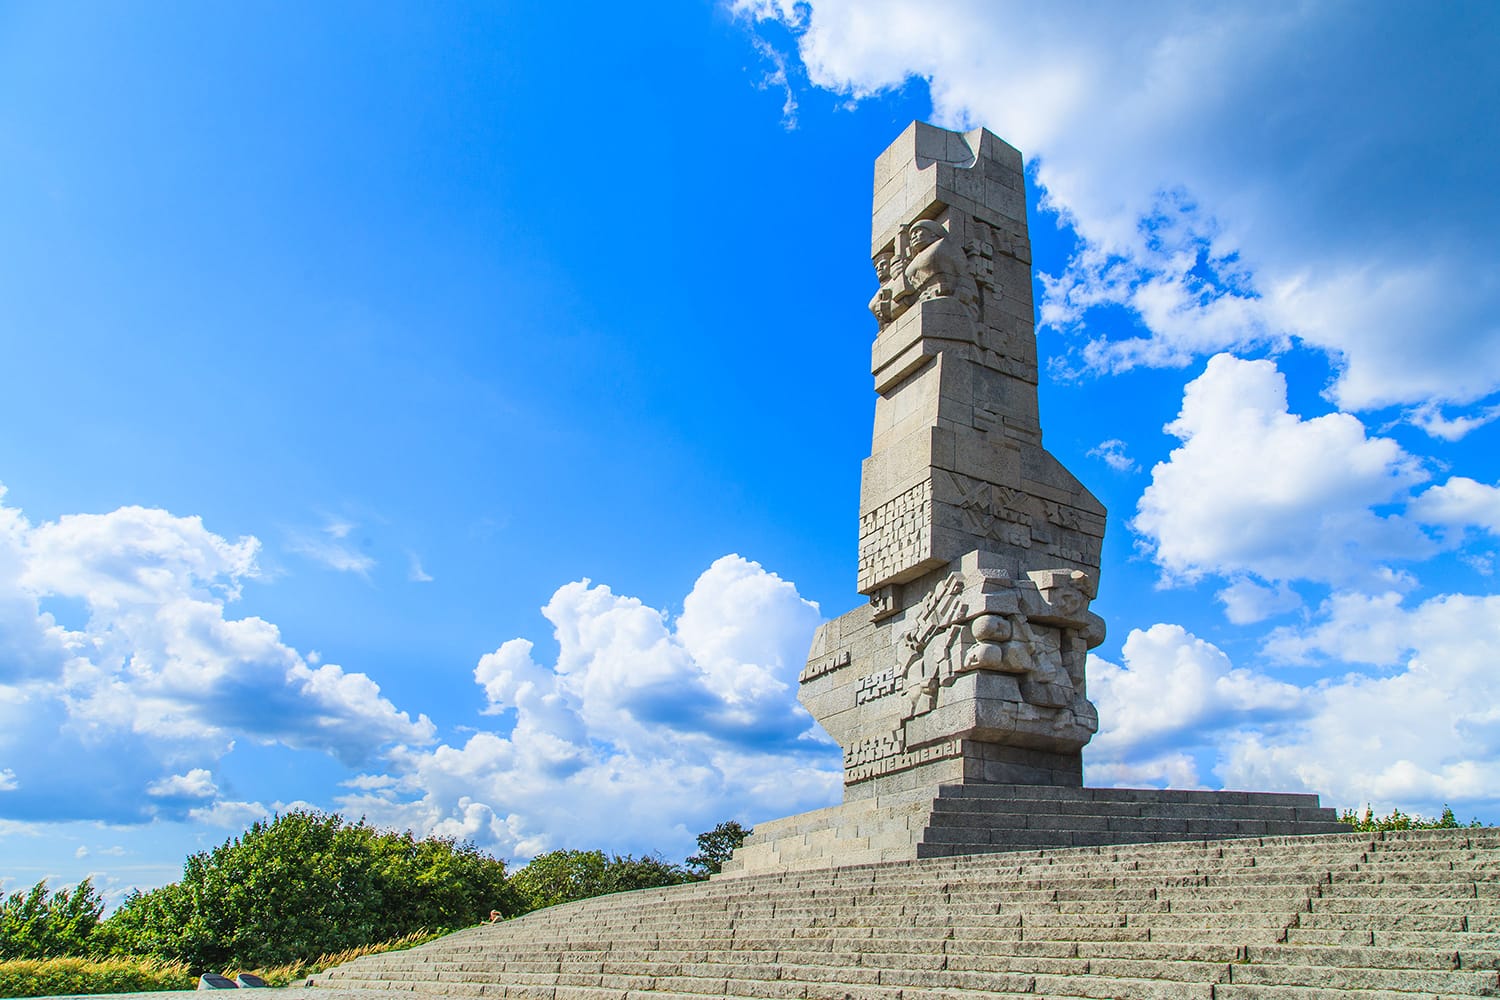 Westerplatte.  Μνημείο που μνημονεύει την πρώτη μάχη του Β' Παγκοσμίου Πολέμου και την Πολωνική Άμυνα το 1939